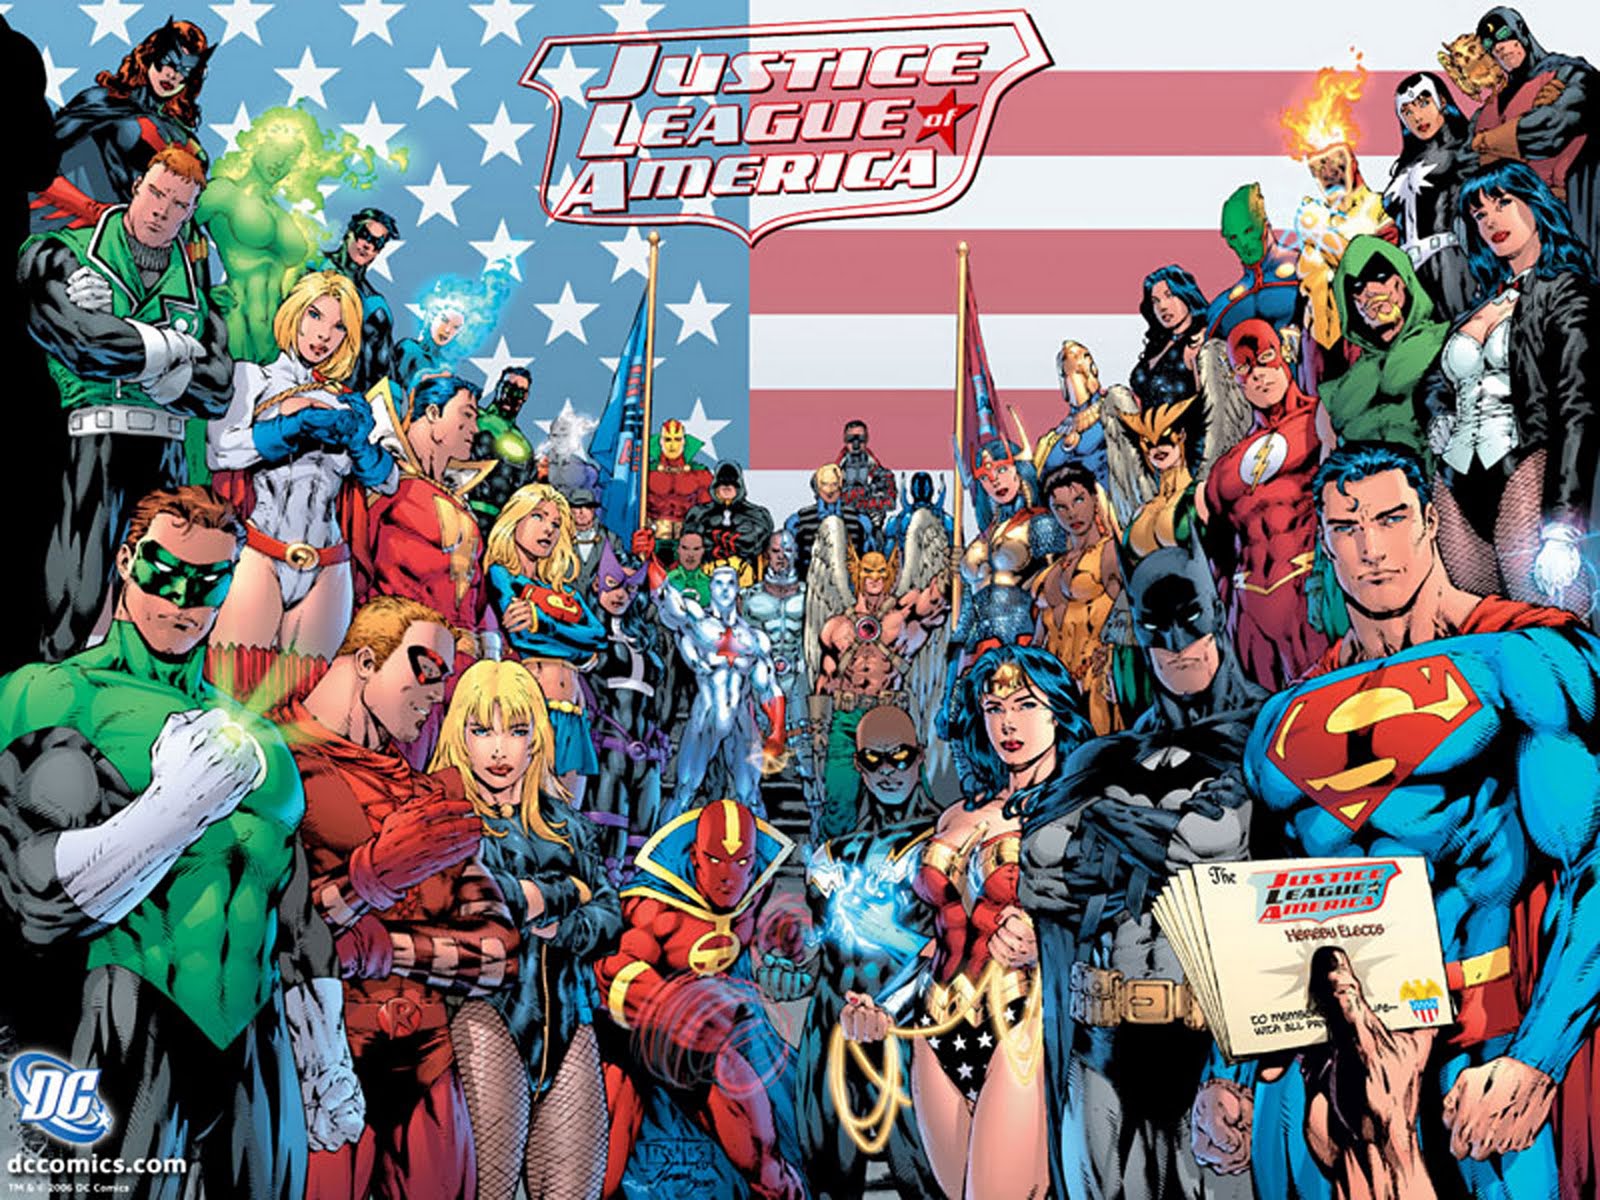 http://2.bp.blogspot.com/-qJV0vwJBg0M/Tmf0T1TXDII/AAAAAAAABP8/d6ILsQltdhQ/s1600/dc+comics+classic+new+jla+jlu+Justice+League+of+America+by+ed+Benes+wallpaper.jpg